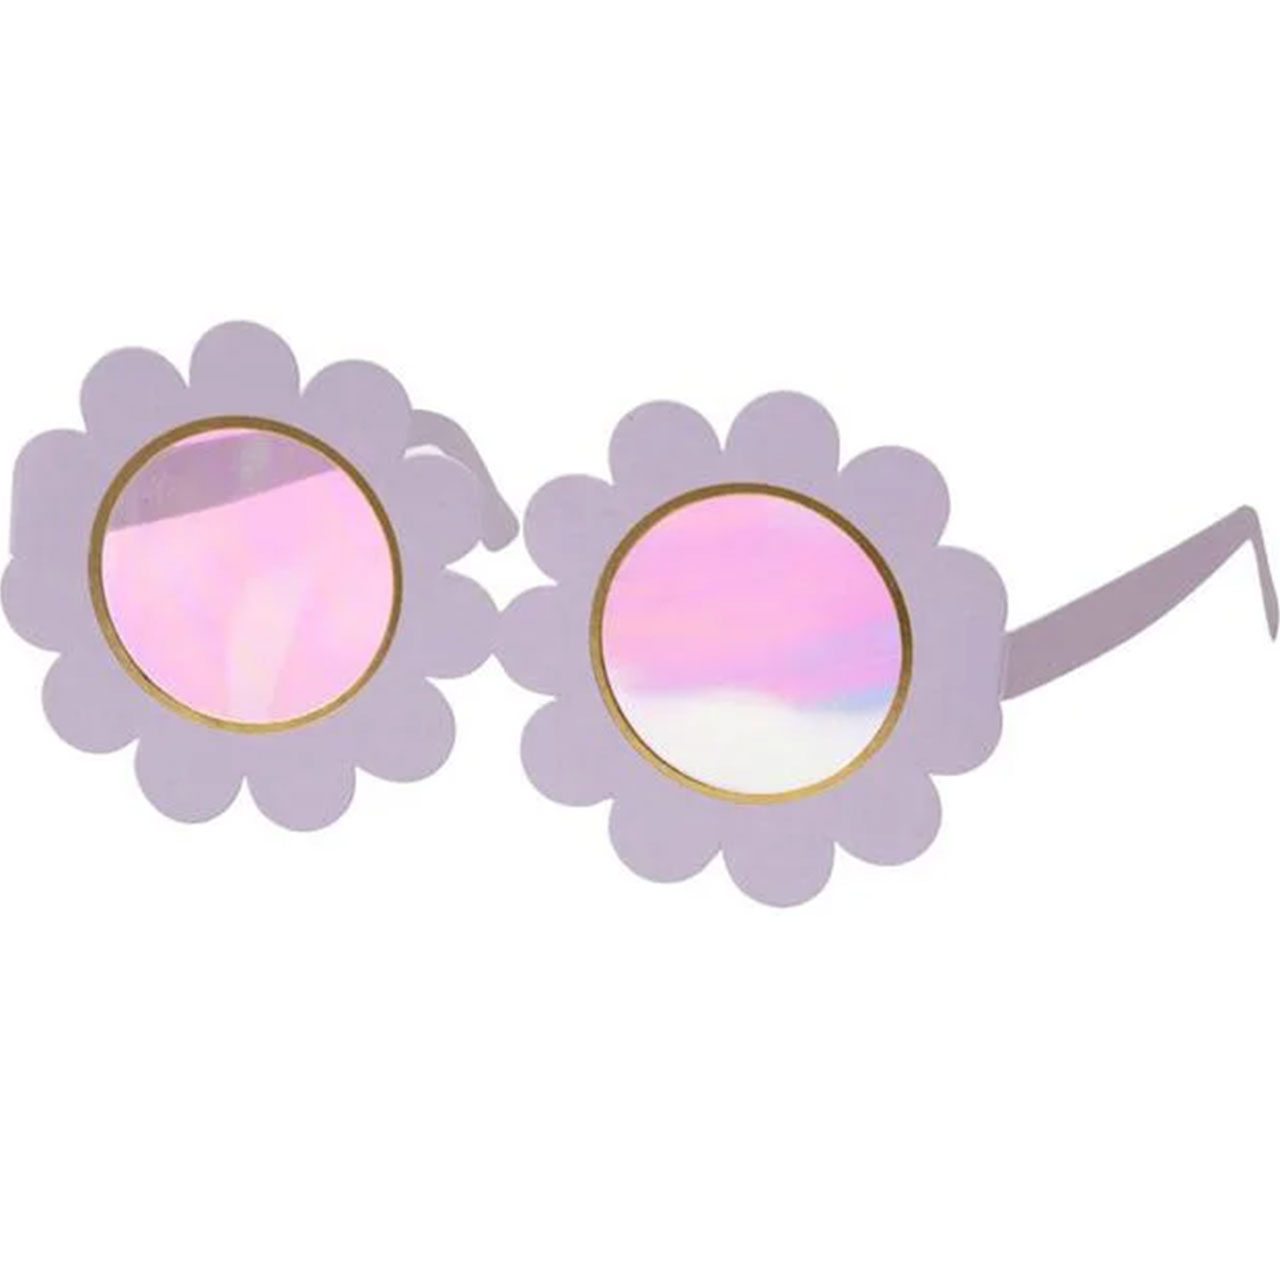 Blumenbrillen